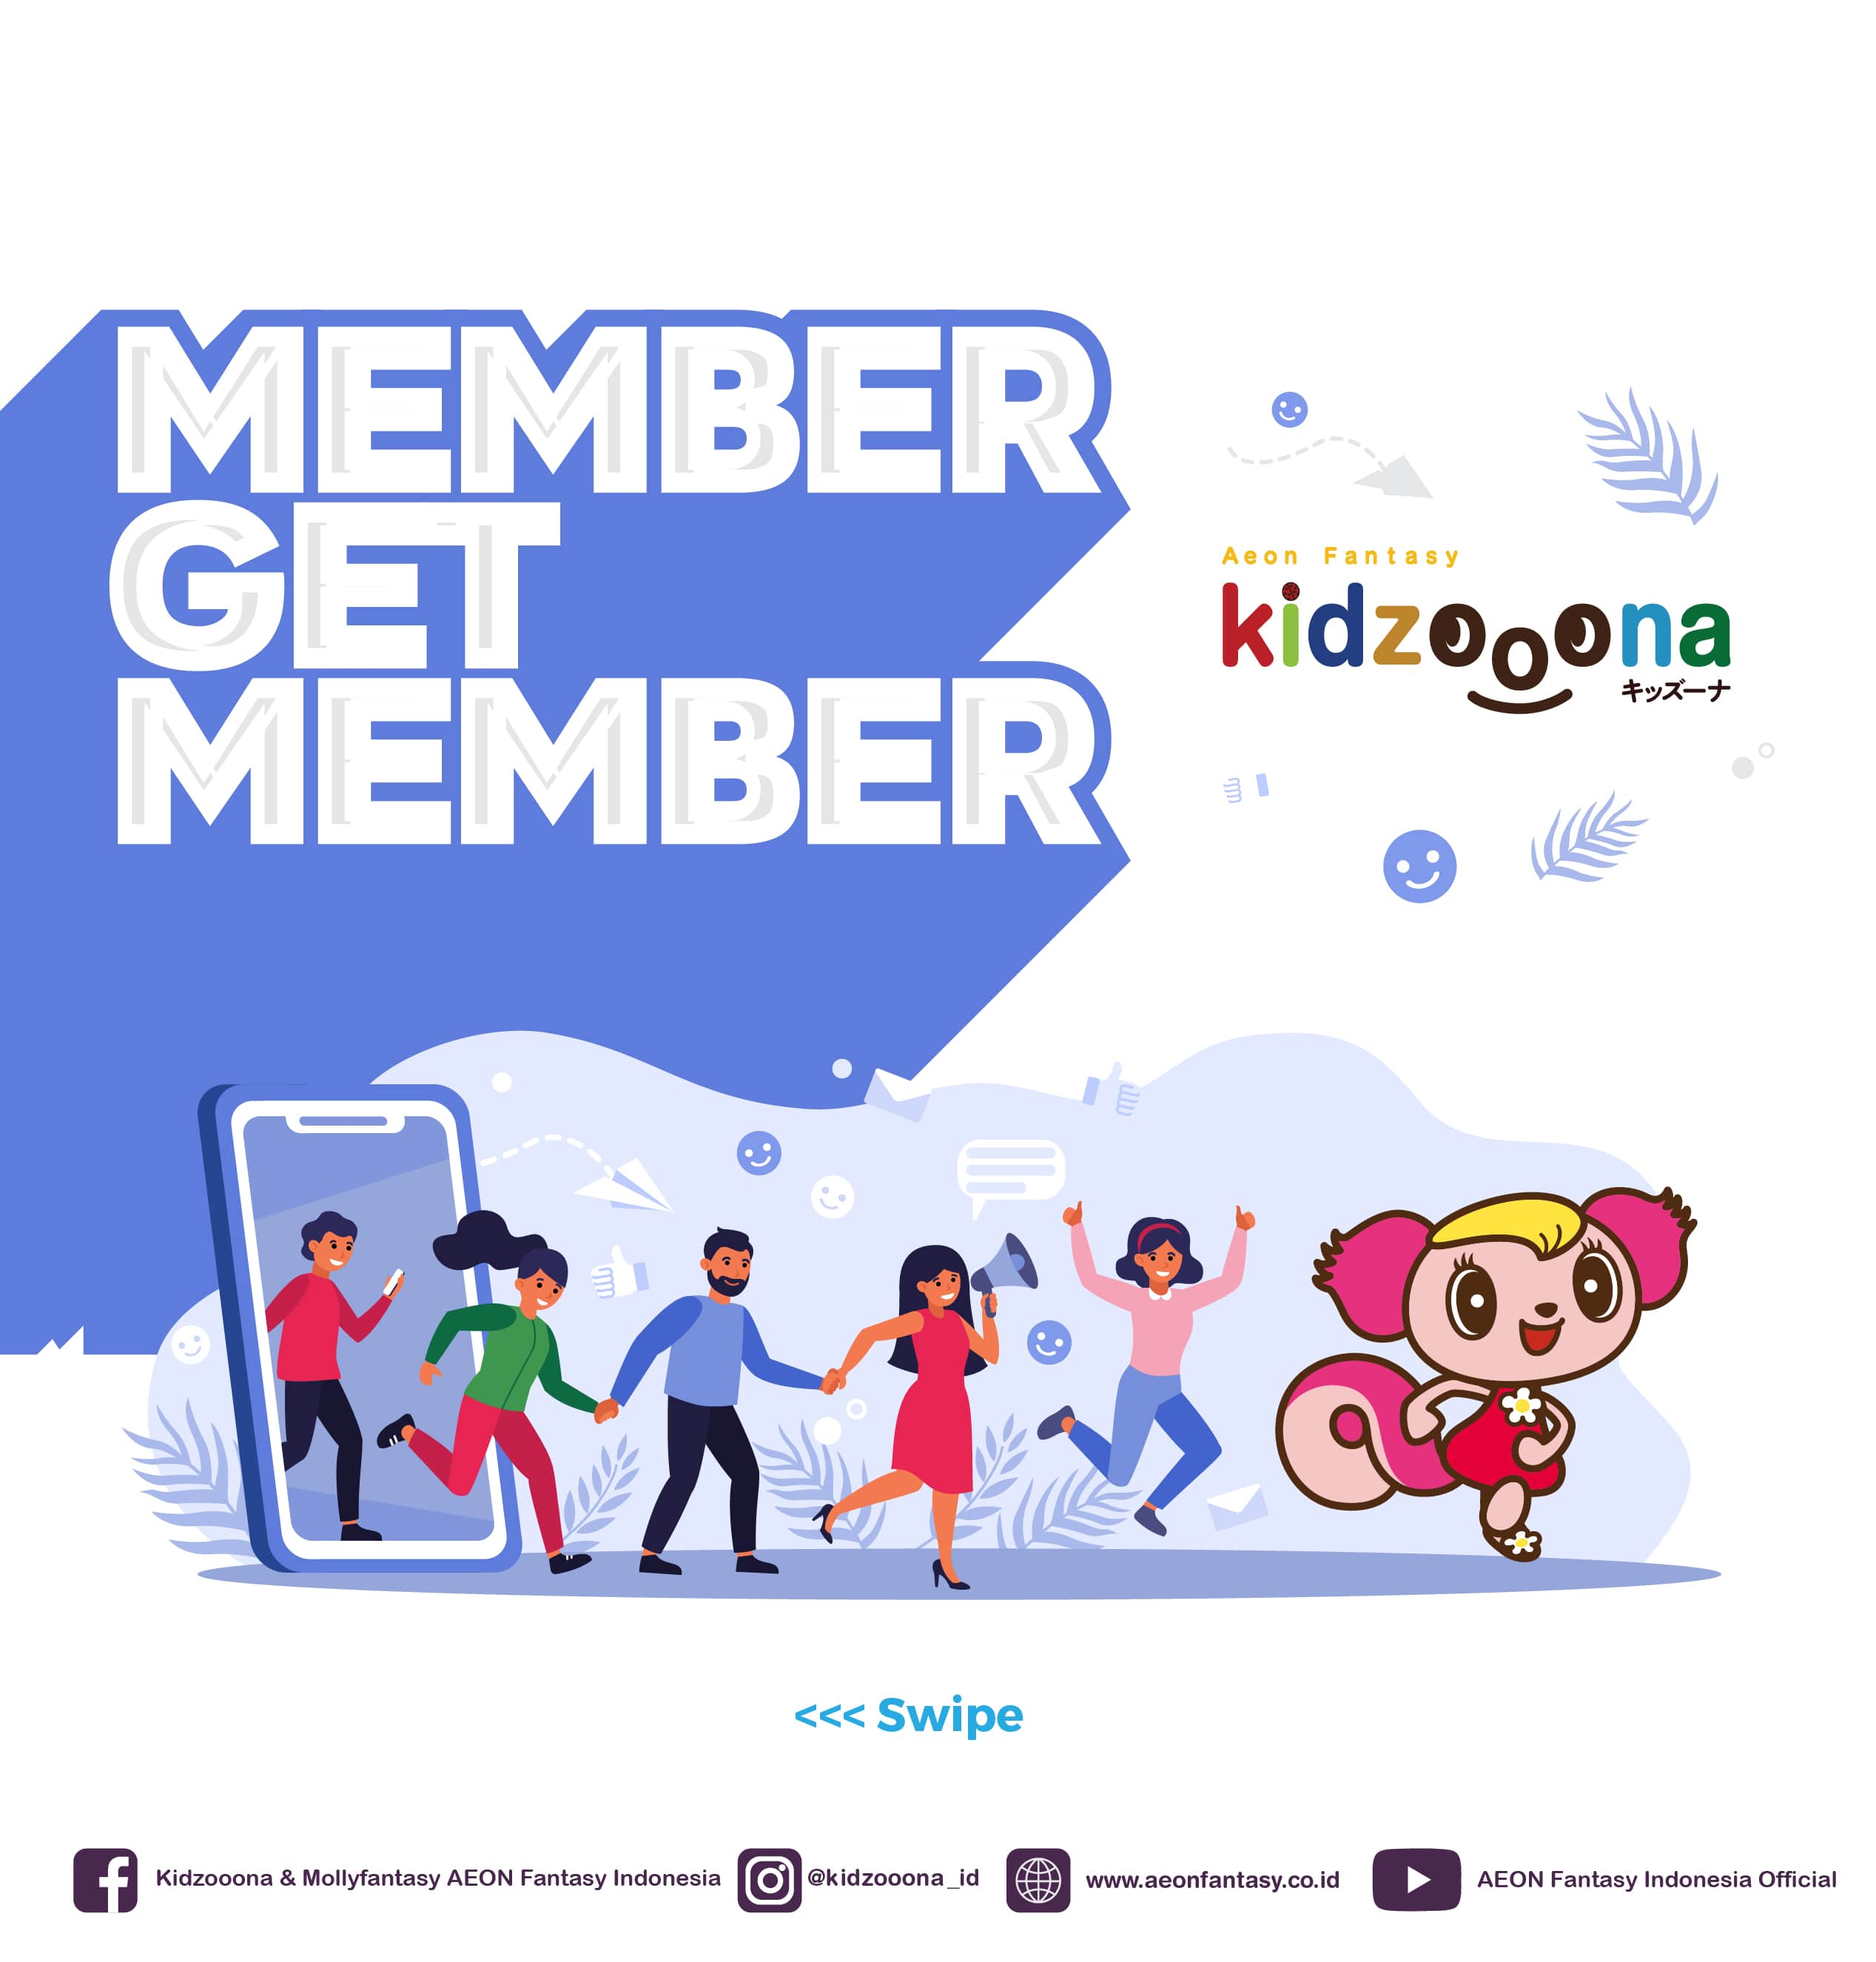 (Indonesia) Member Get Member kidzooona